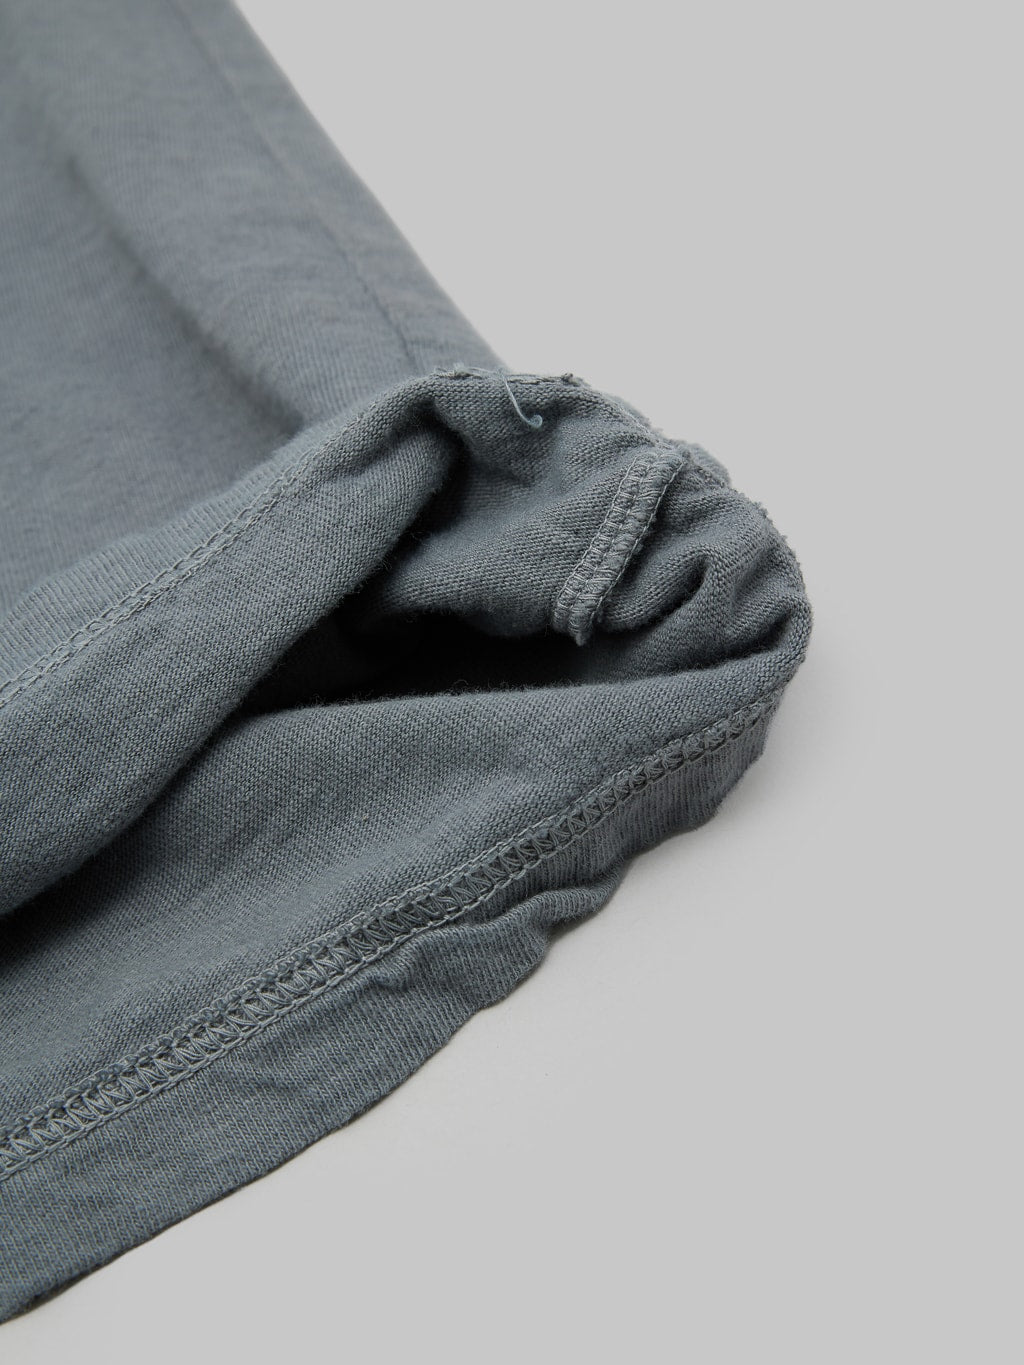 ues logo tshirt grey slim fit vintage fabric closeup